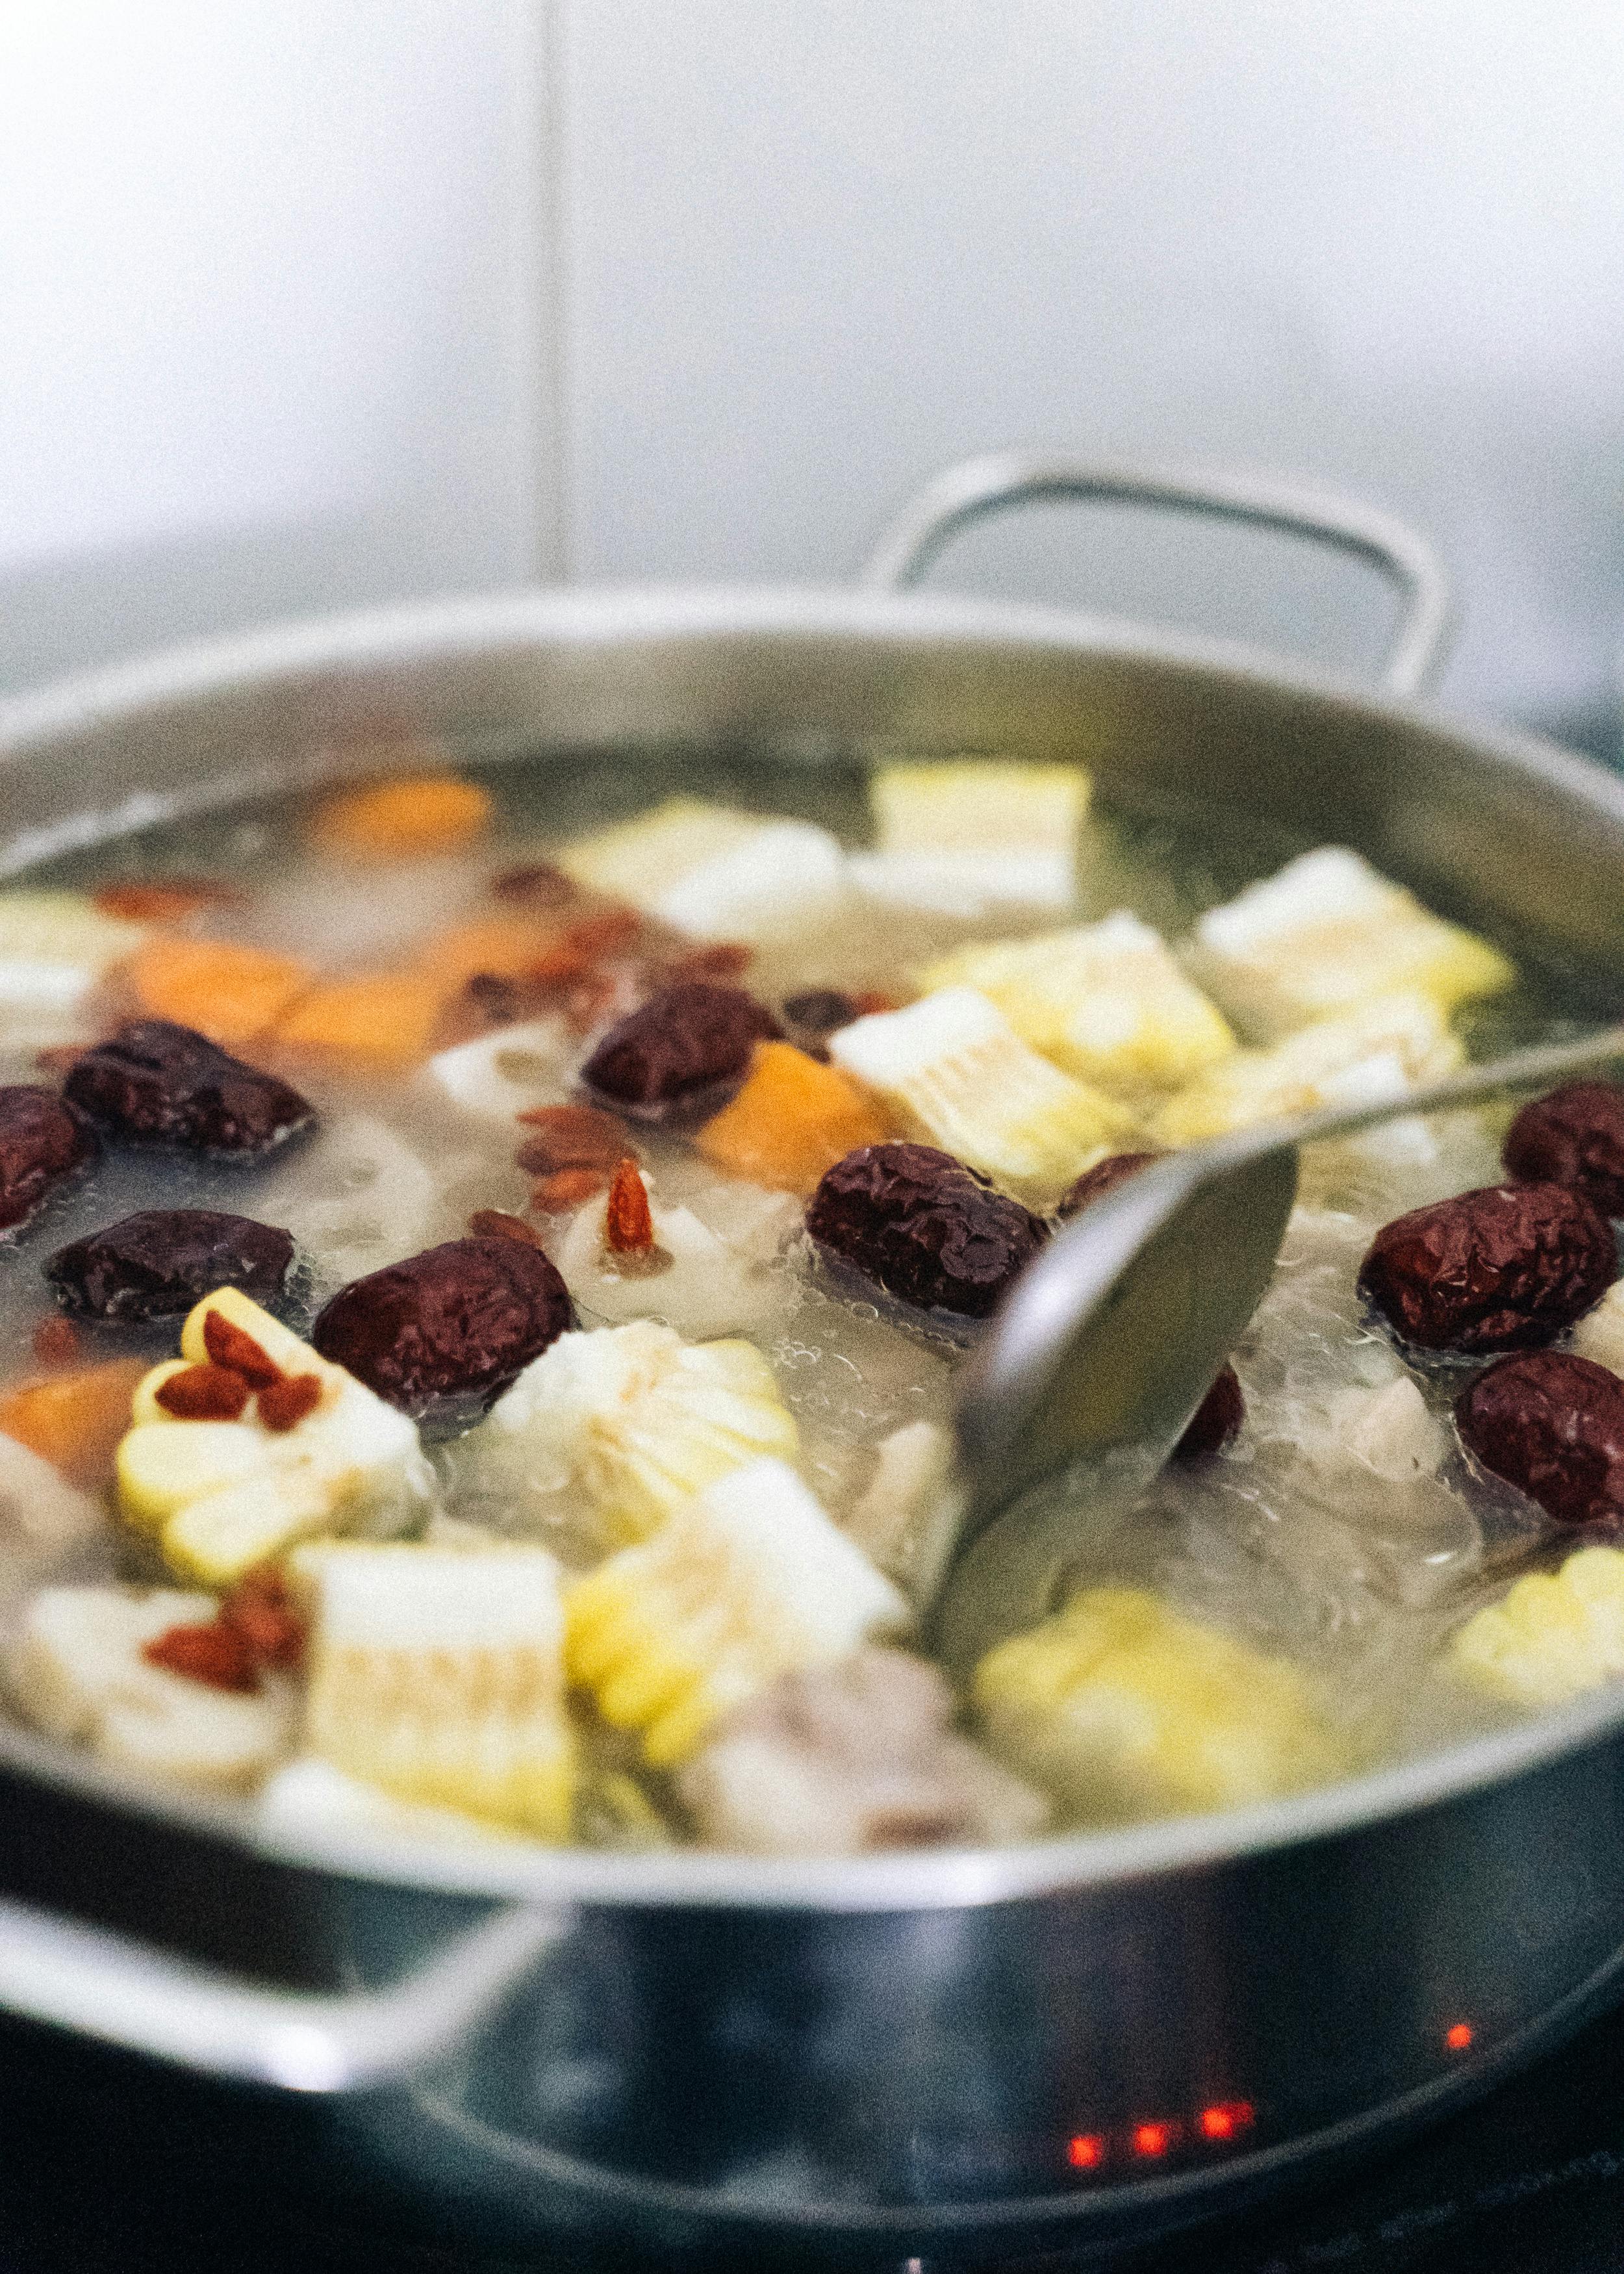 A pot of soup | Source: Pexels